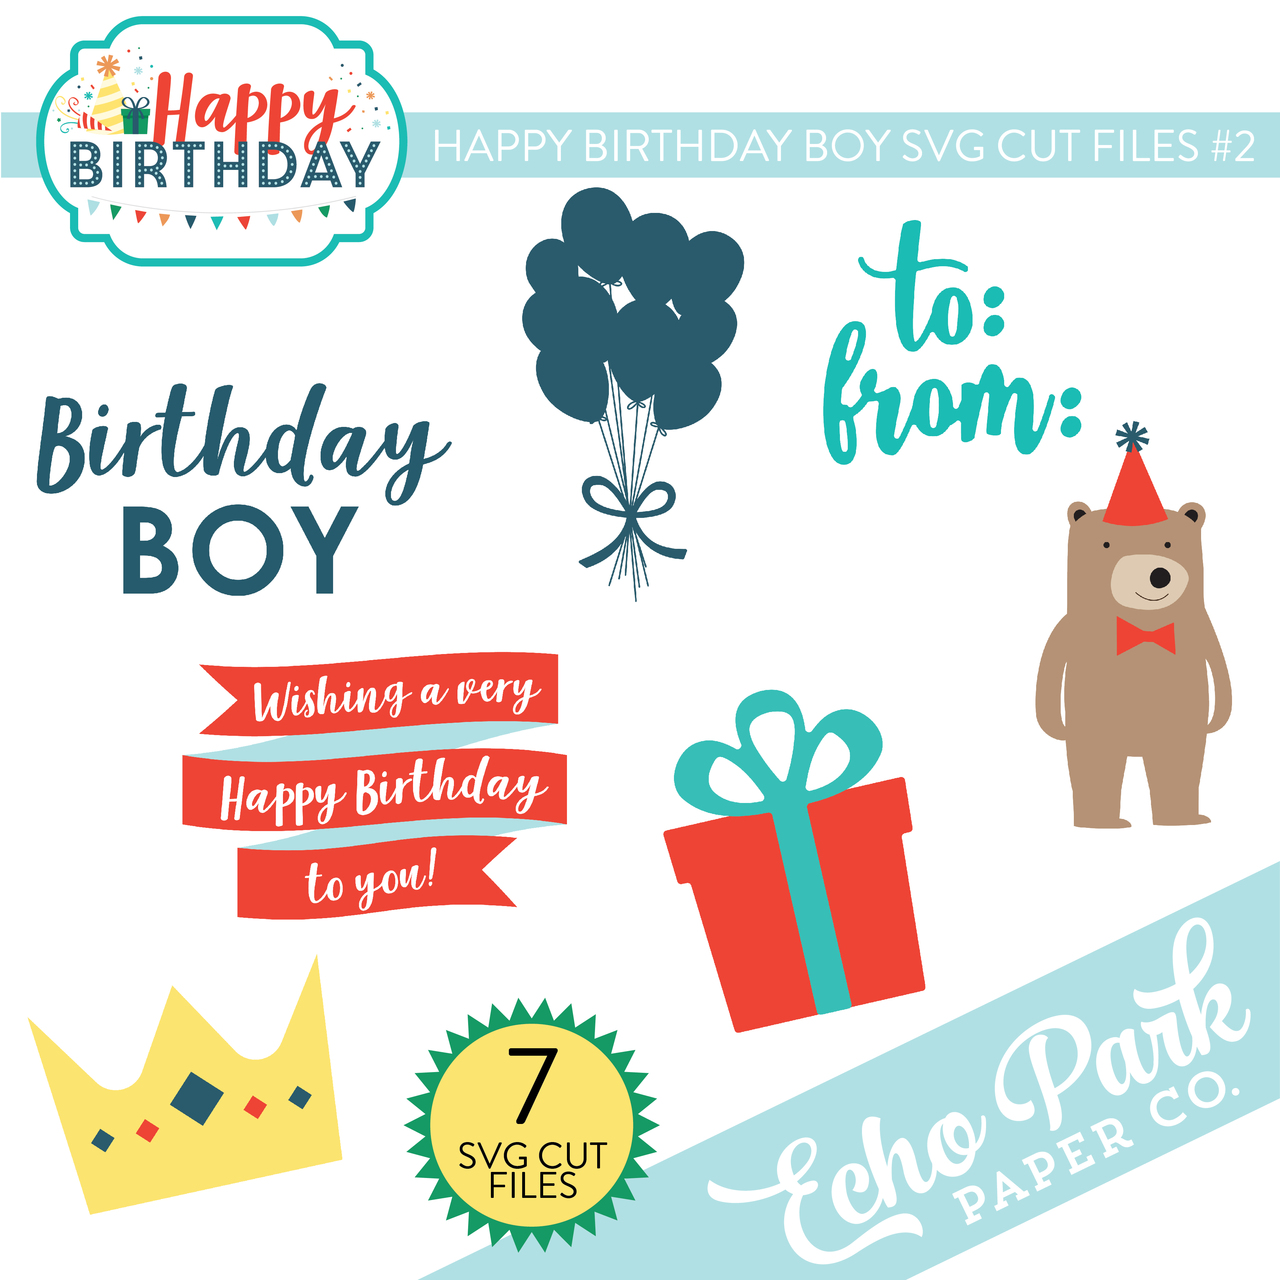 Happy Birthday Boy SVG Cut Files #2